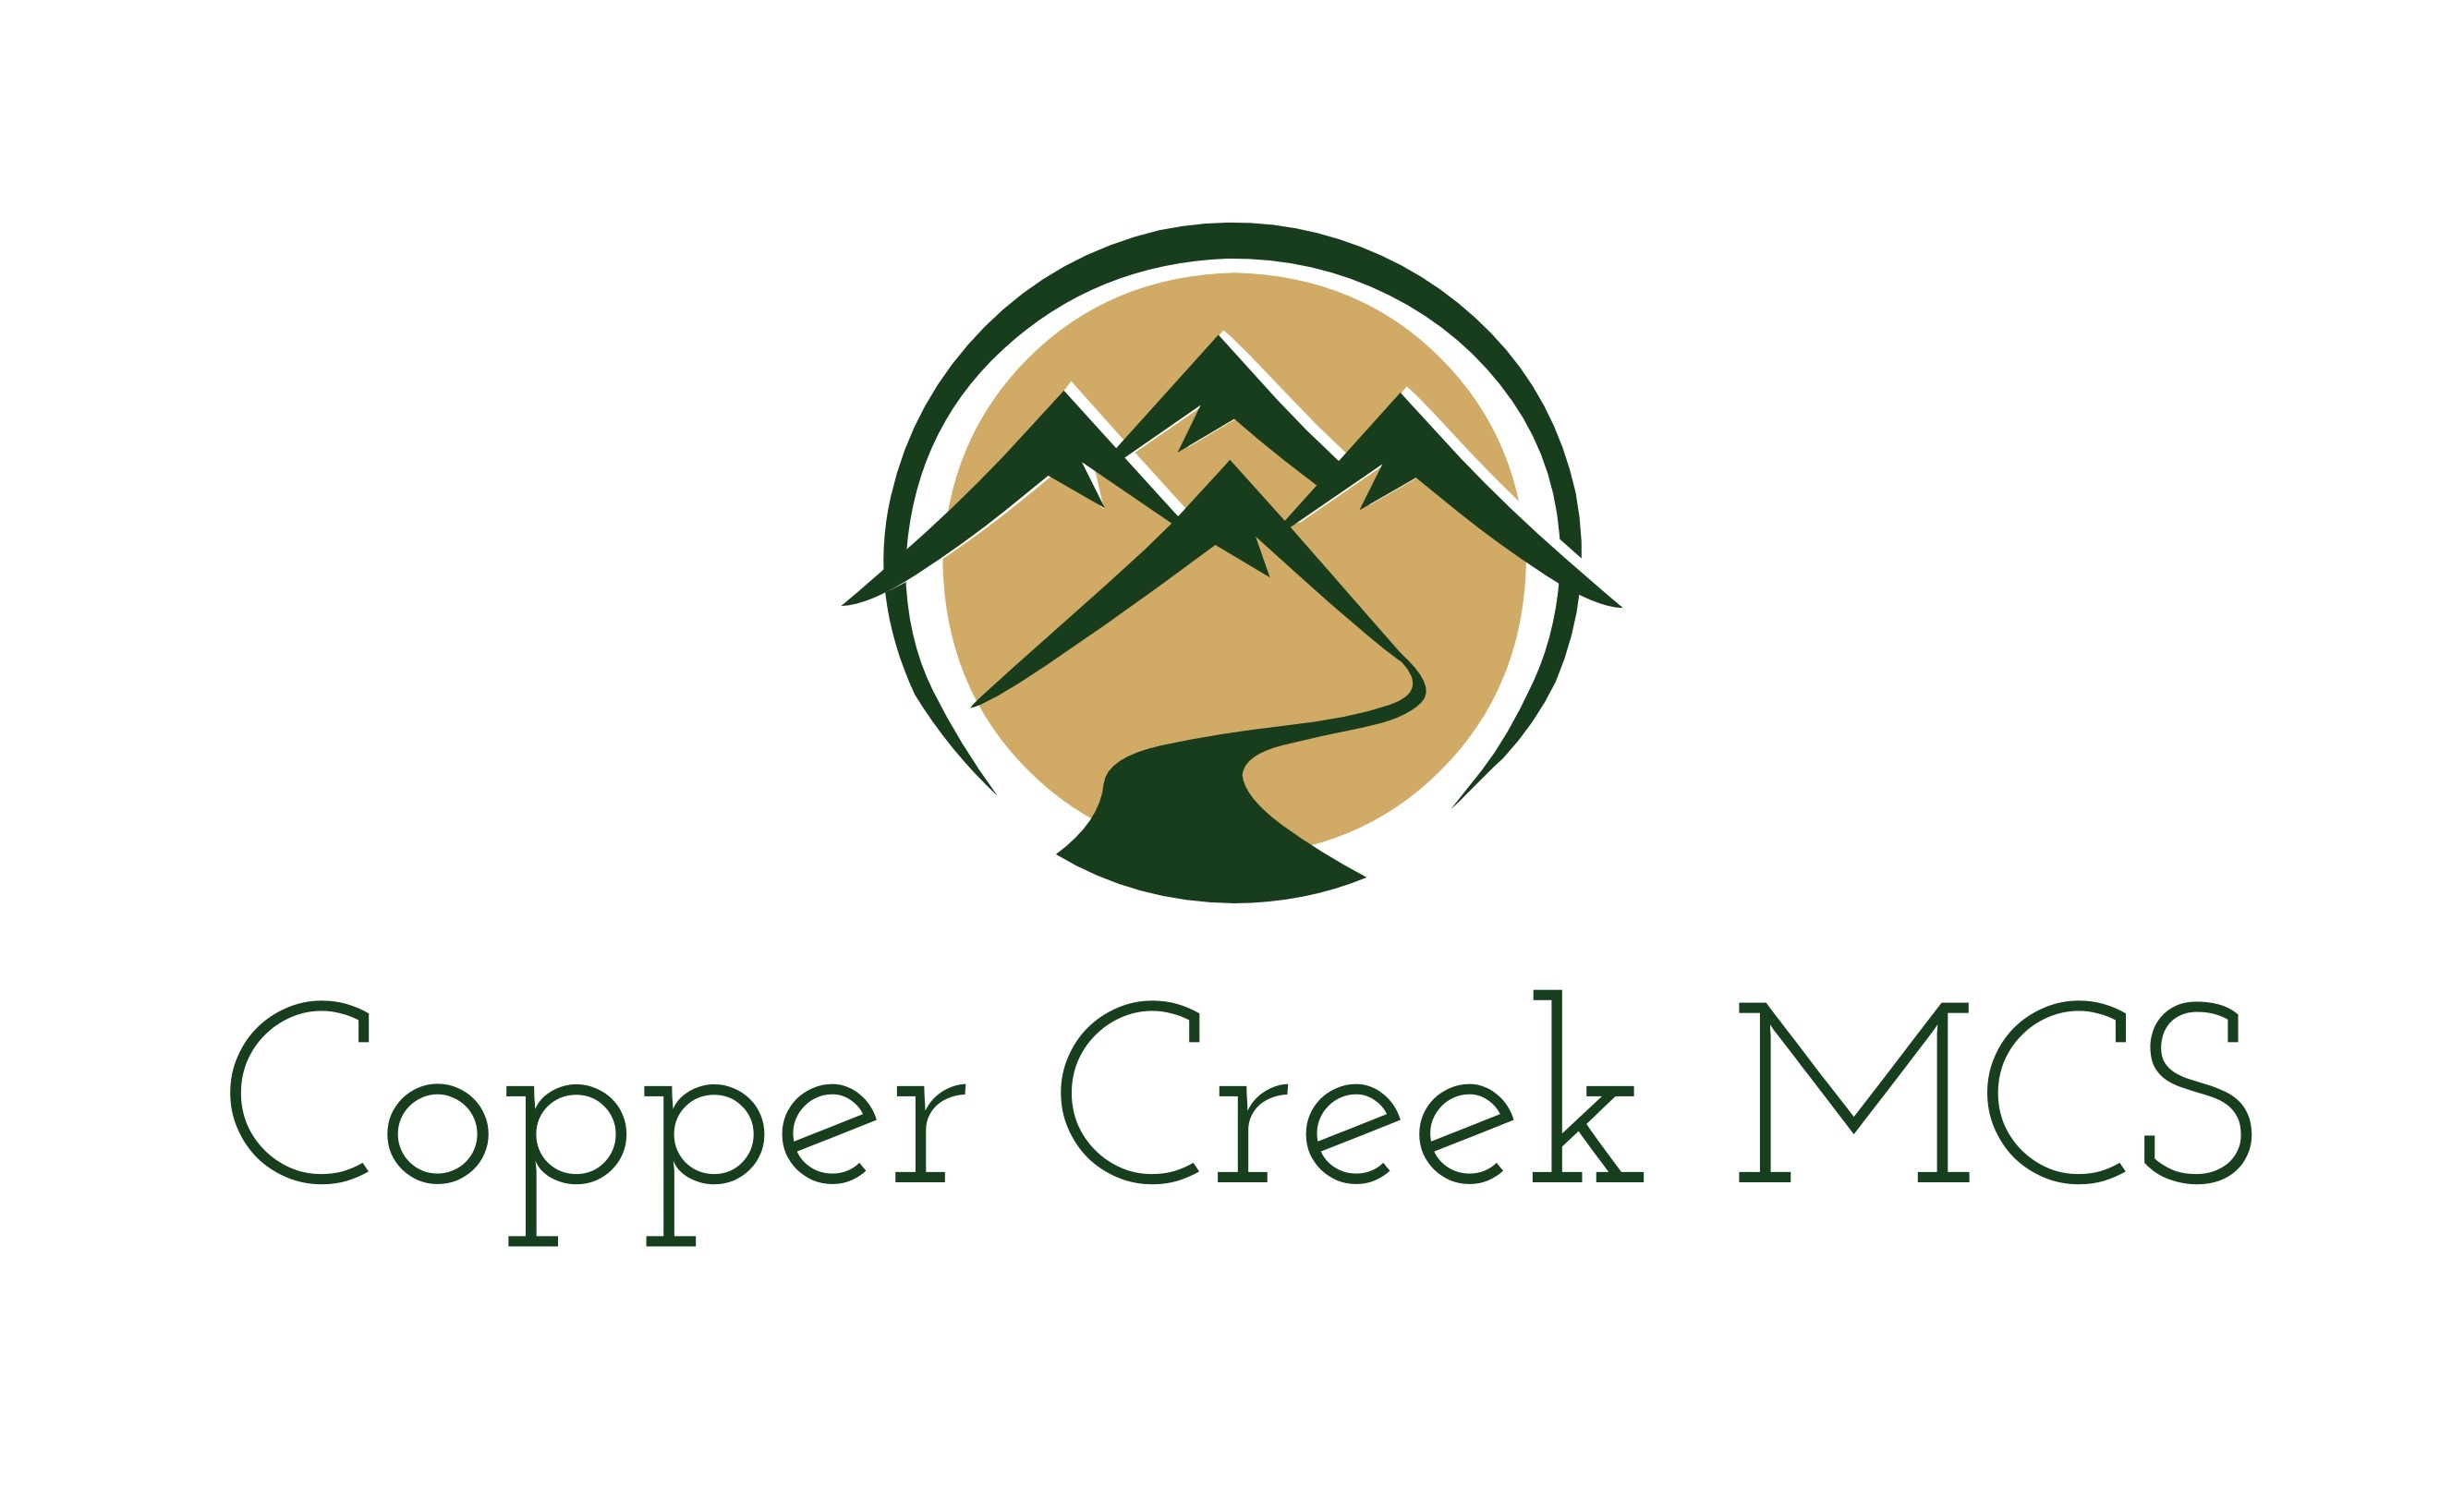 COPPER CREEK MCS LLC - Service Offerings